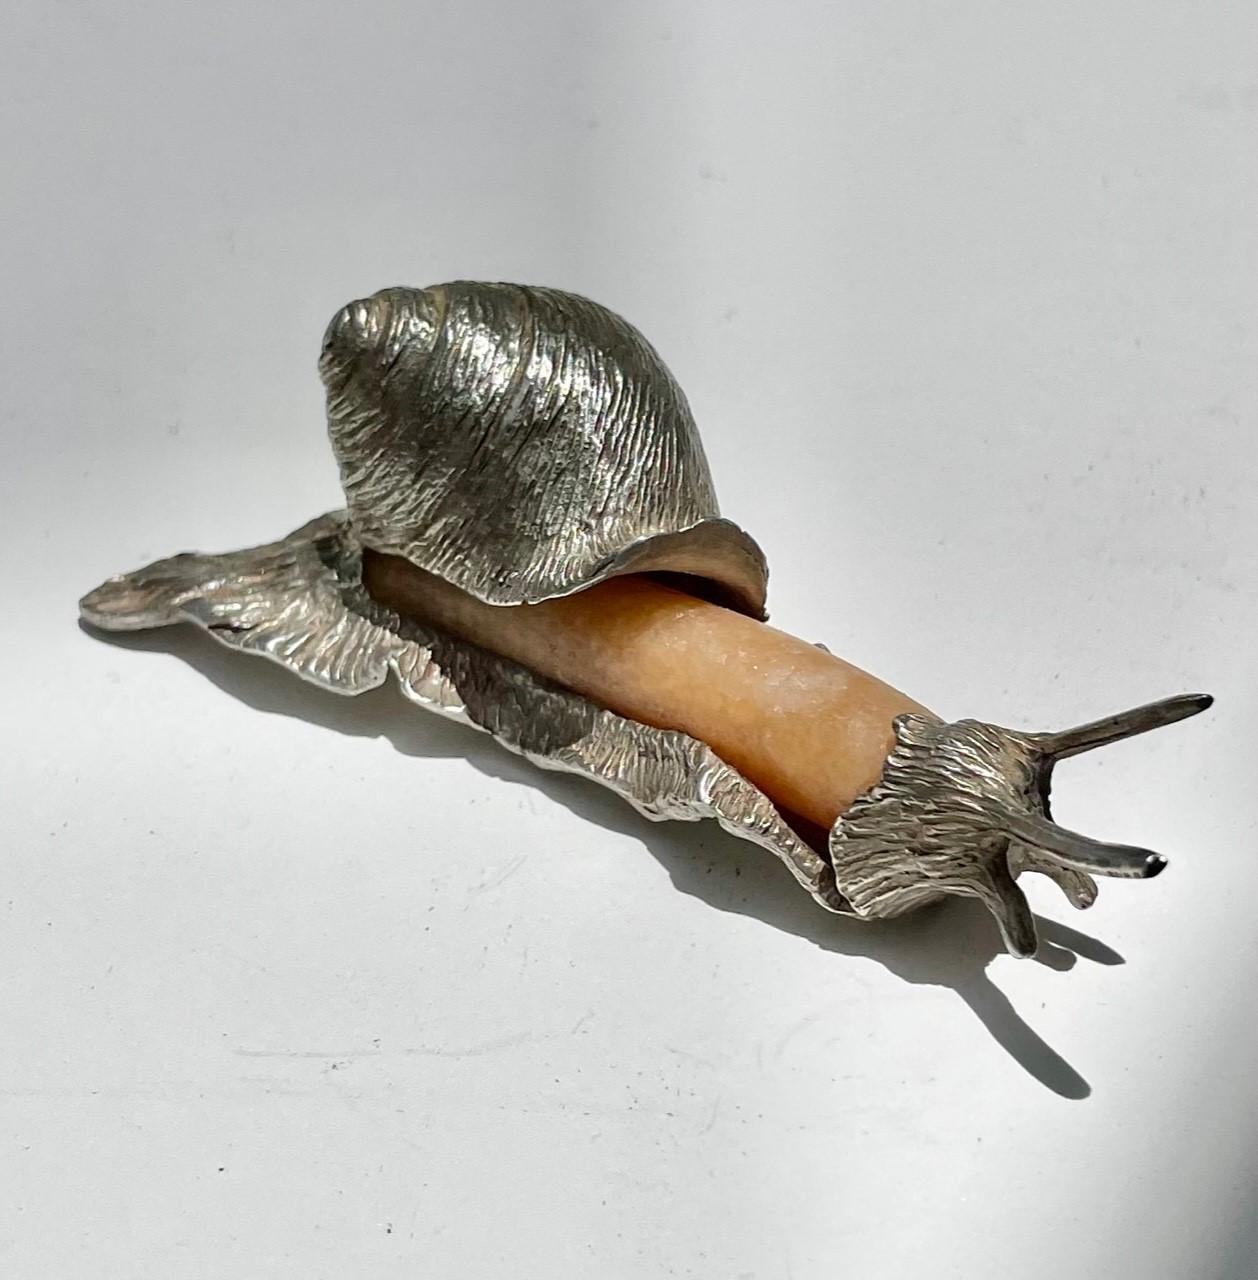 Brazilian Group of Three Rare Miniature Animals in Sterling Silver and Semi-Precious Stone